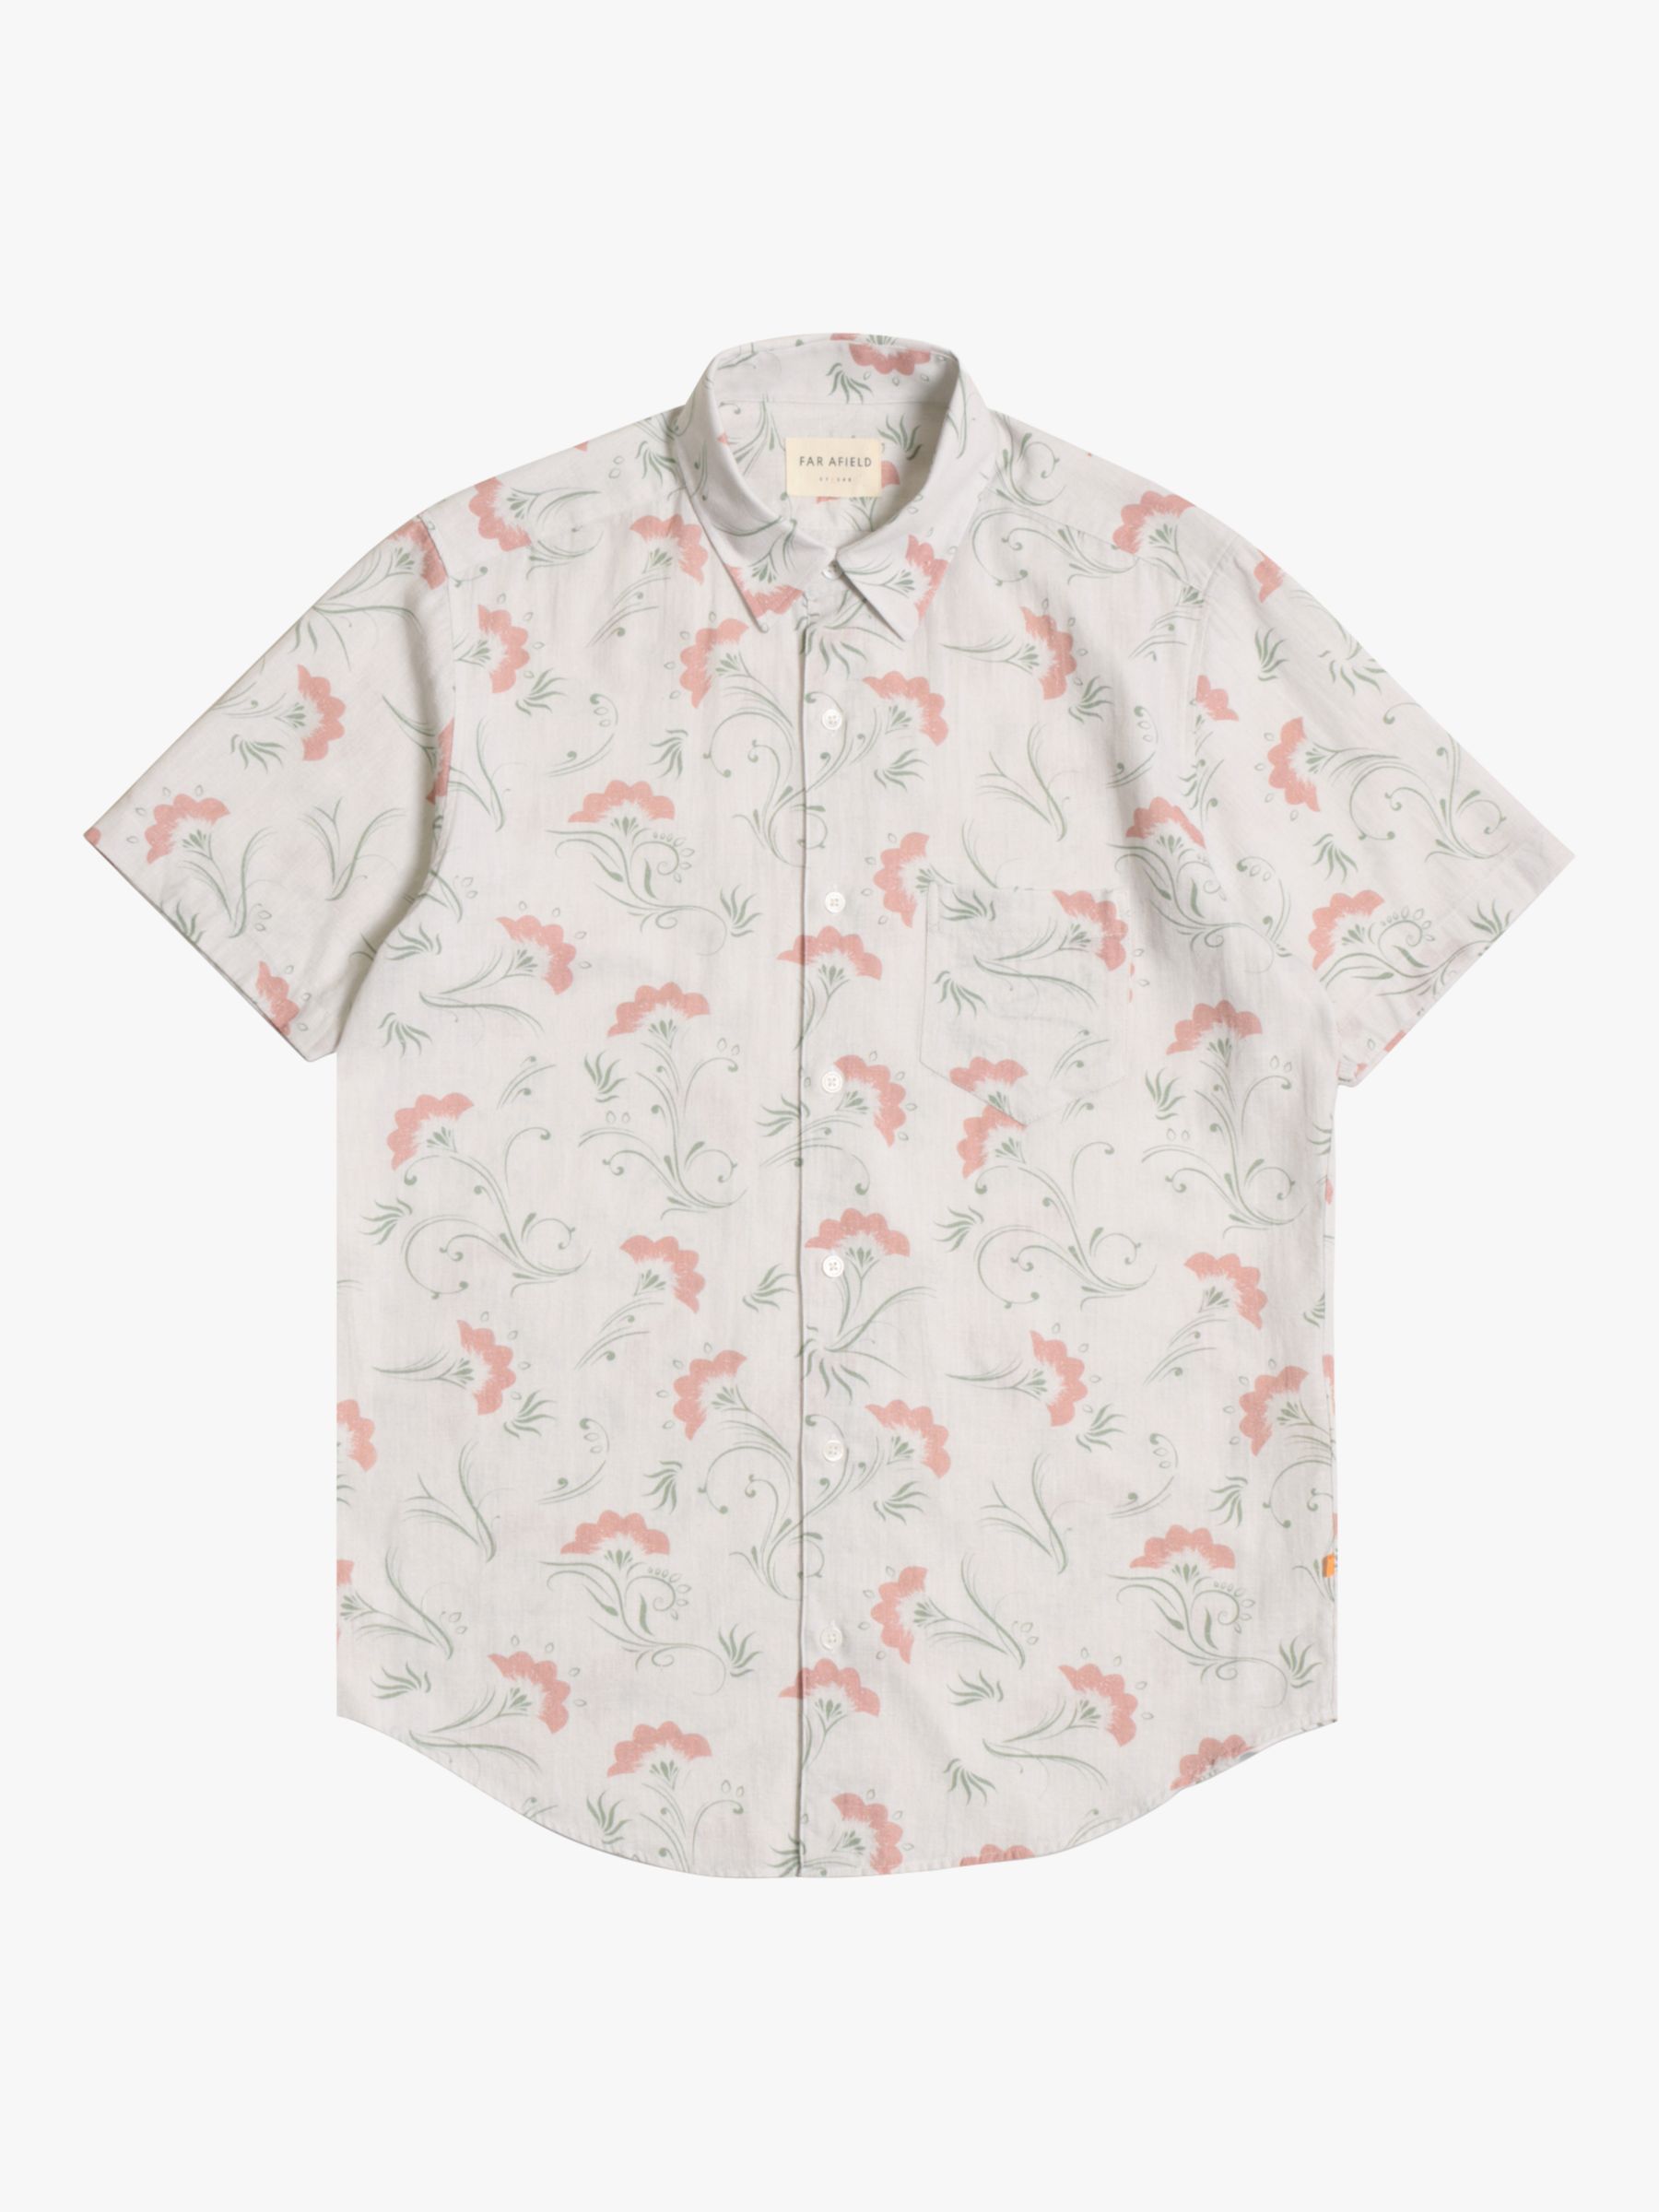 Far Afield Cotton Linen Short Sleeve Shirt, Flowering